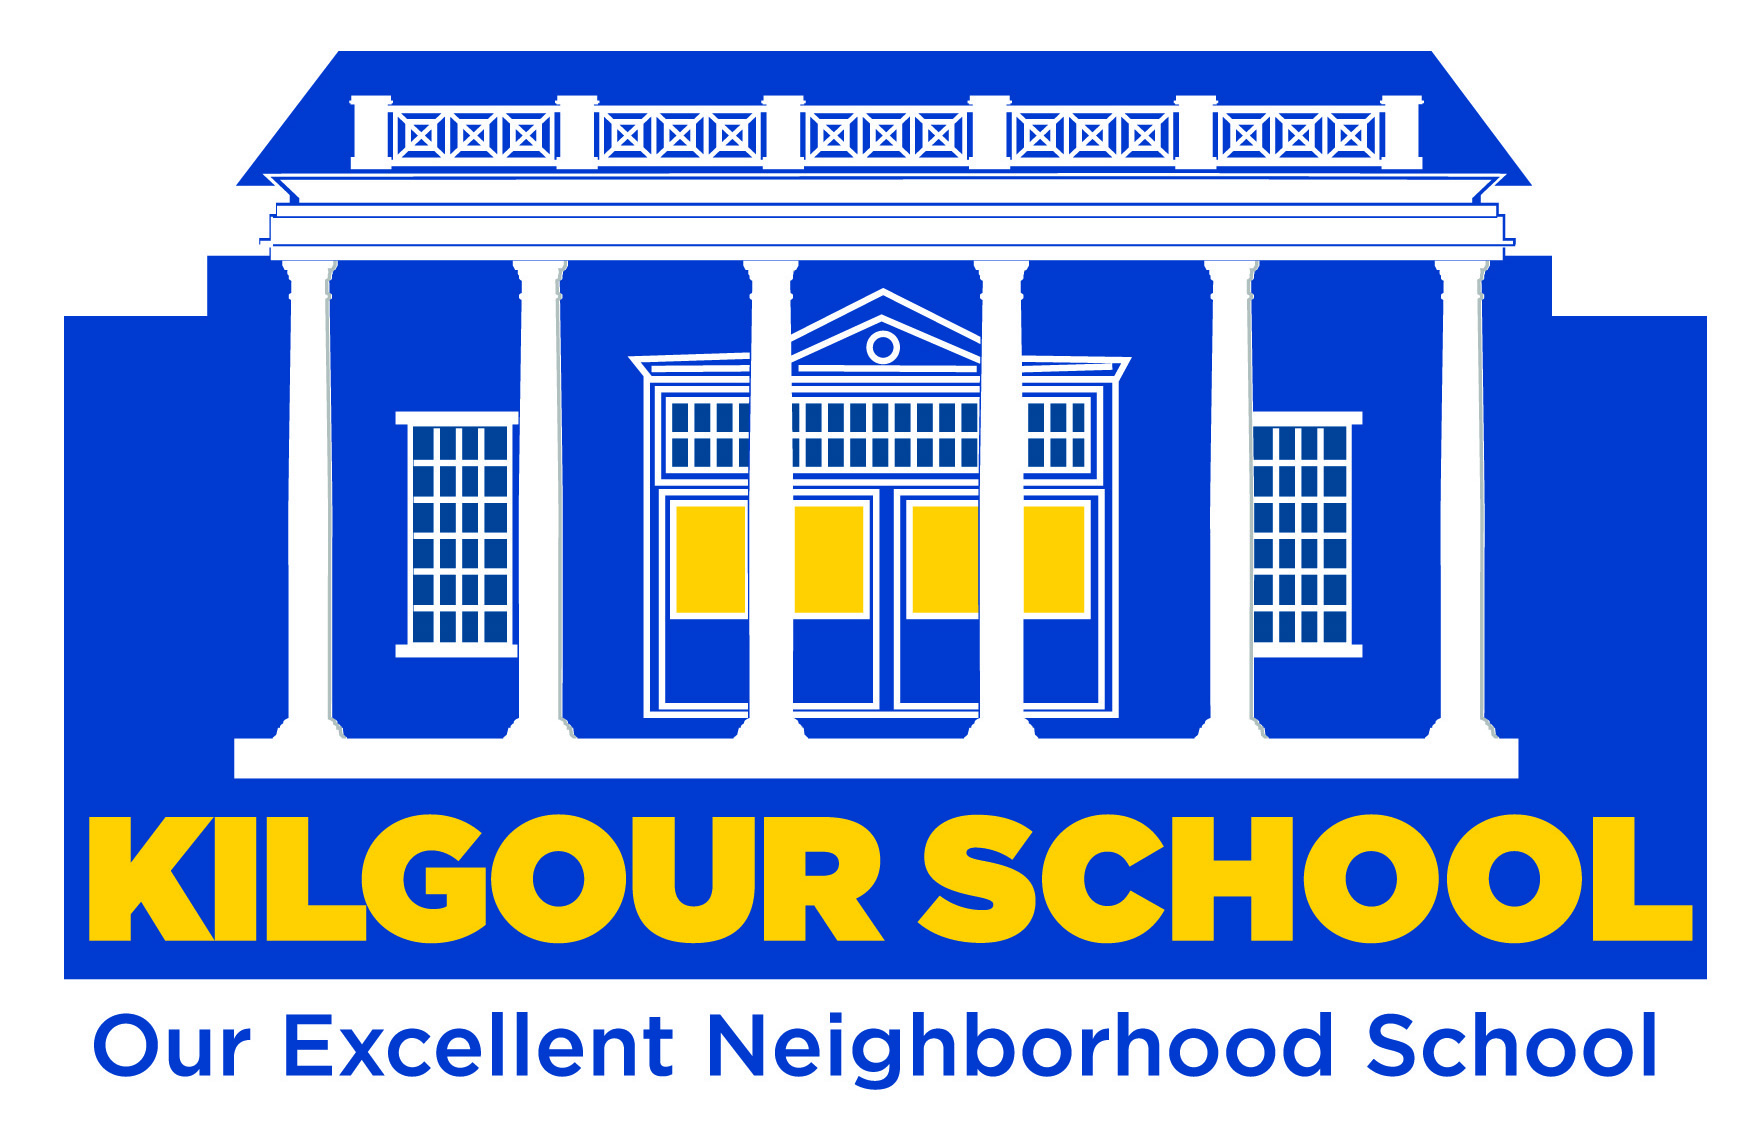 Kilgour-School-logo.jpg